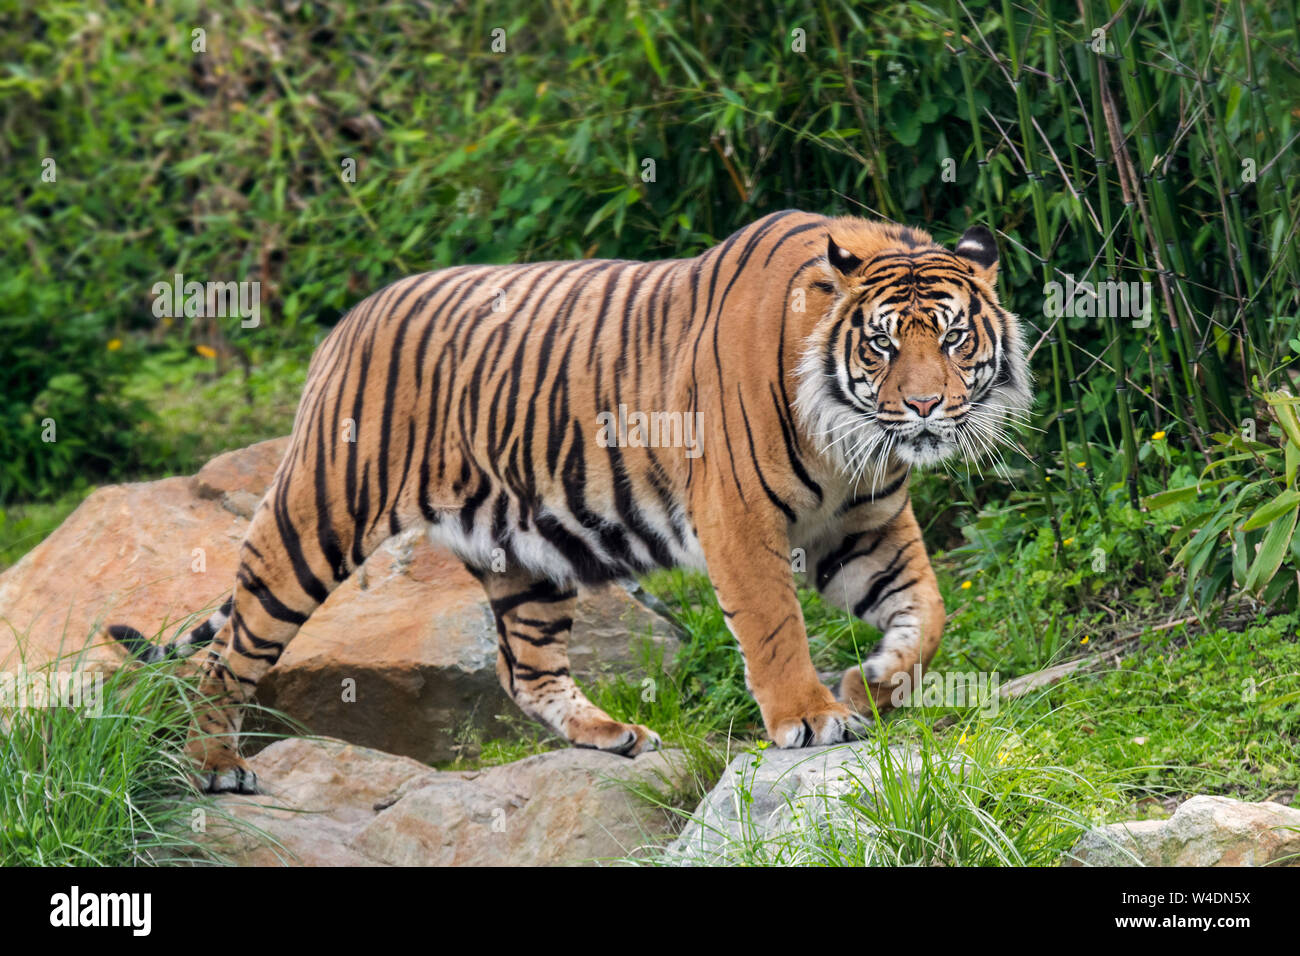 Tigre de Sumatra (Panthera tigris sondaica) Balade en forêt, originaire de l'île indonésienne de Sumatra, Indonésie Banque D'Images